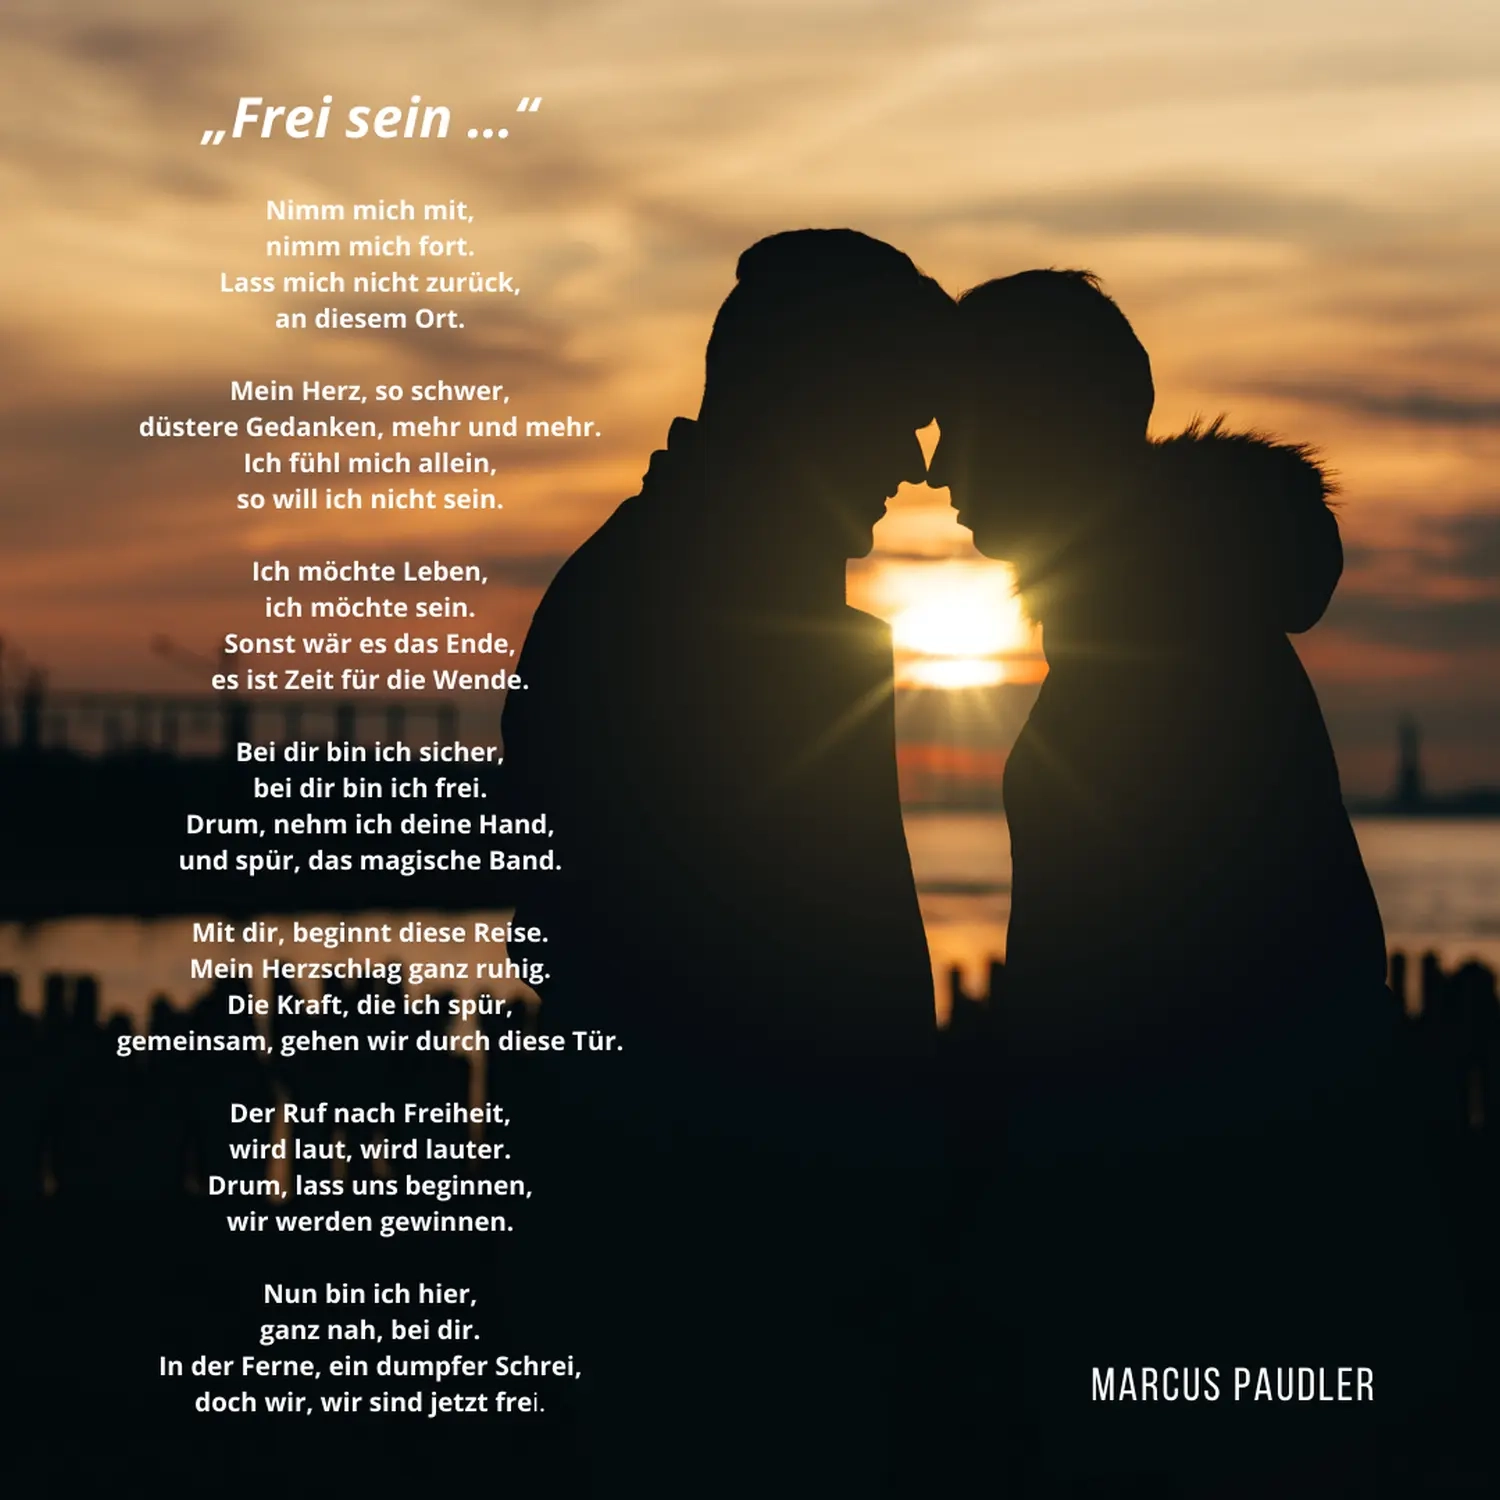 Frei sein-Poesie von Marcus Paudler